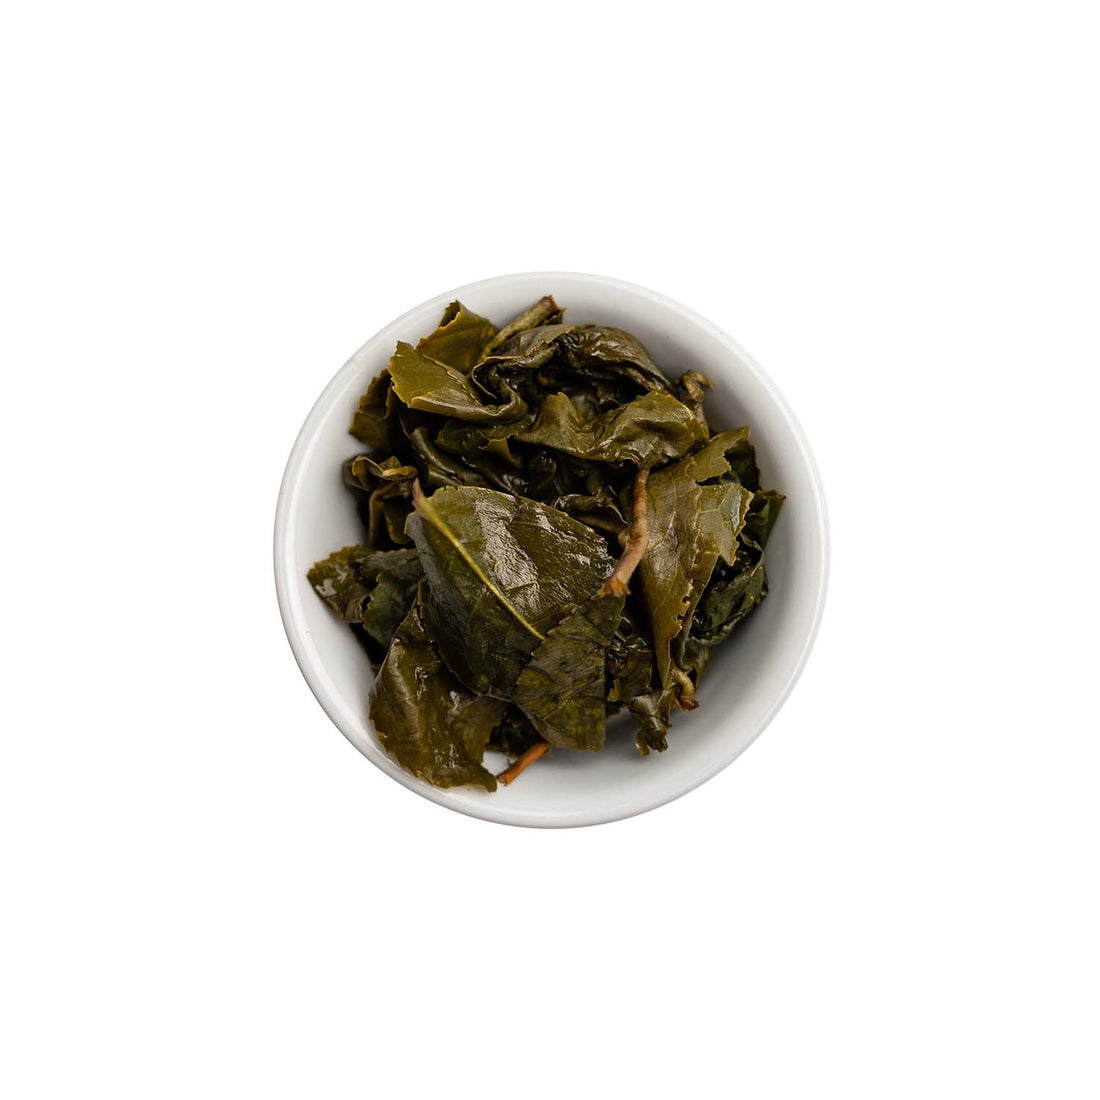 Ein ansprechendes Foto von den losen, aufgebrühten Blättern unseres GABA Oolong Tees Nevermind in einer Tasse.